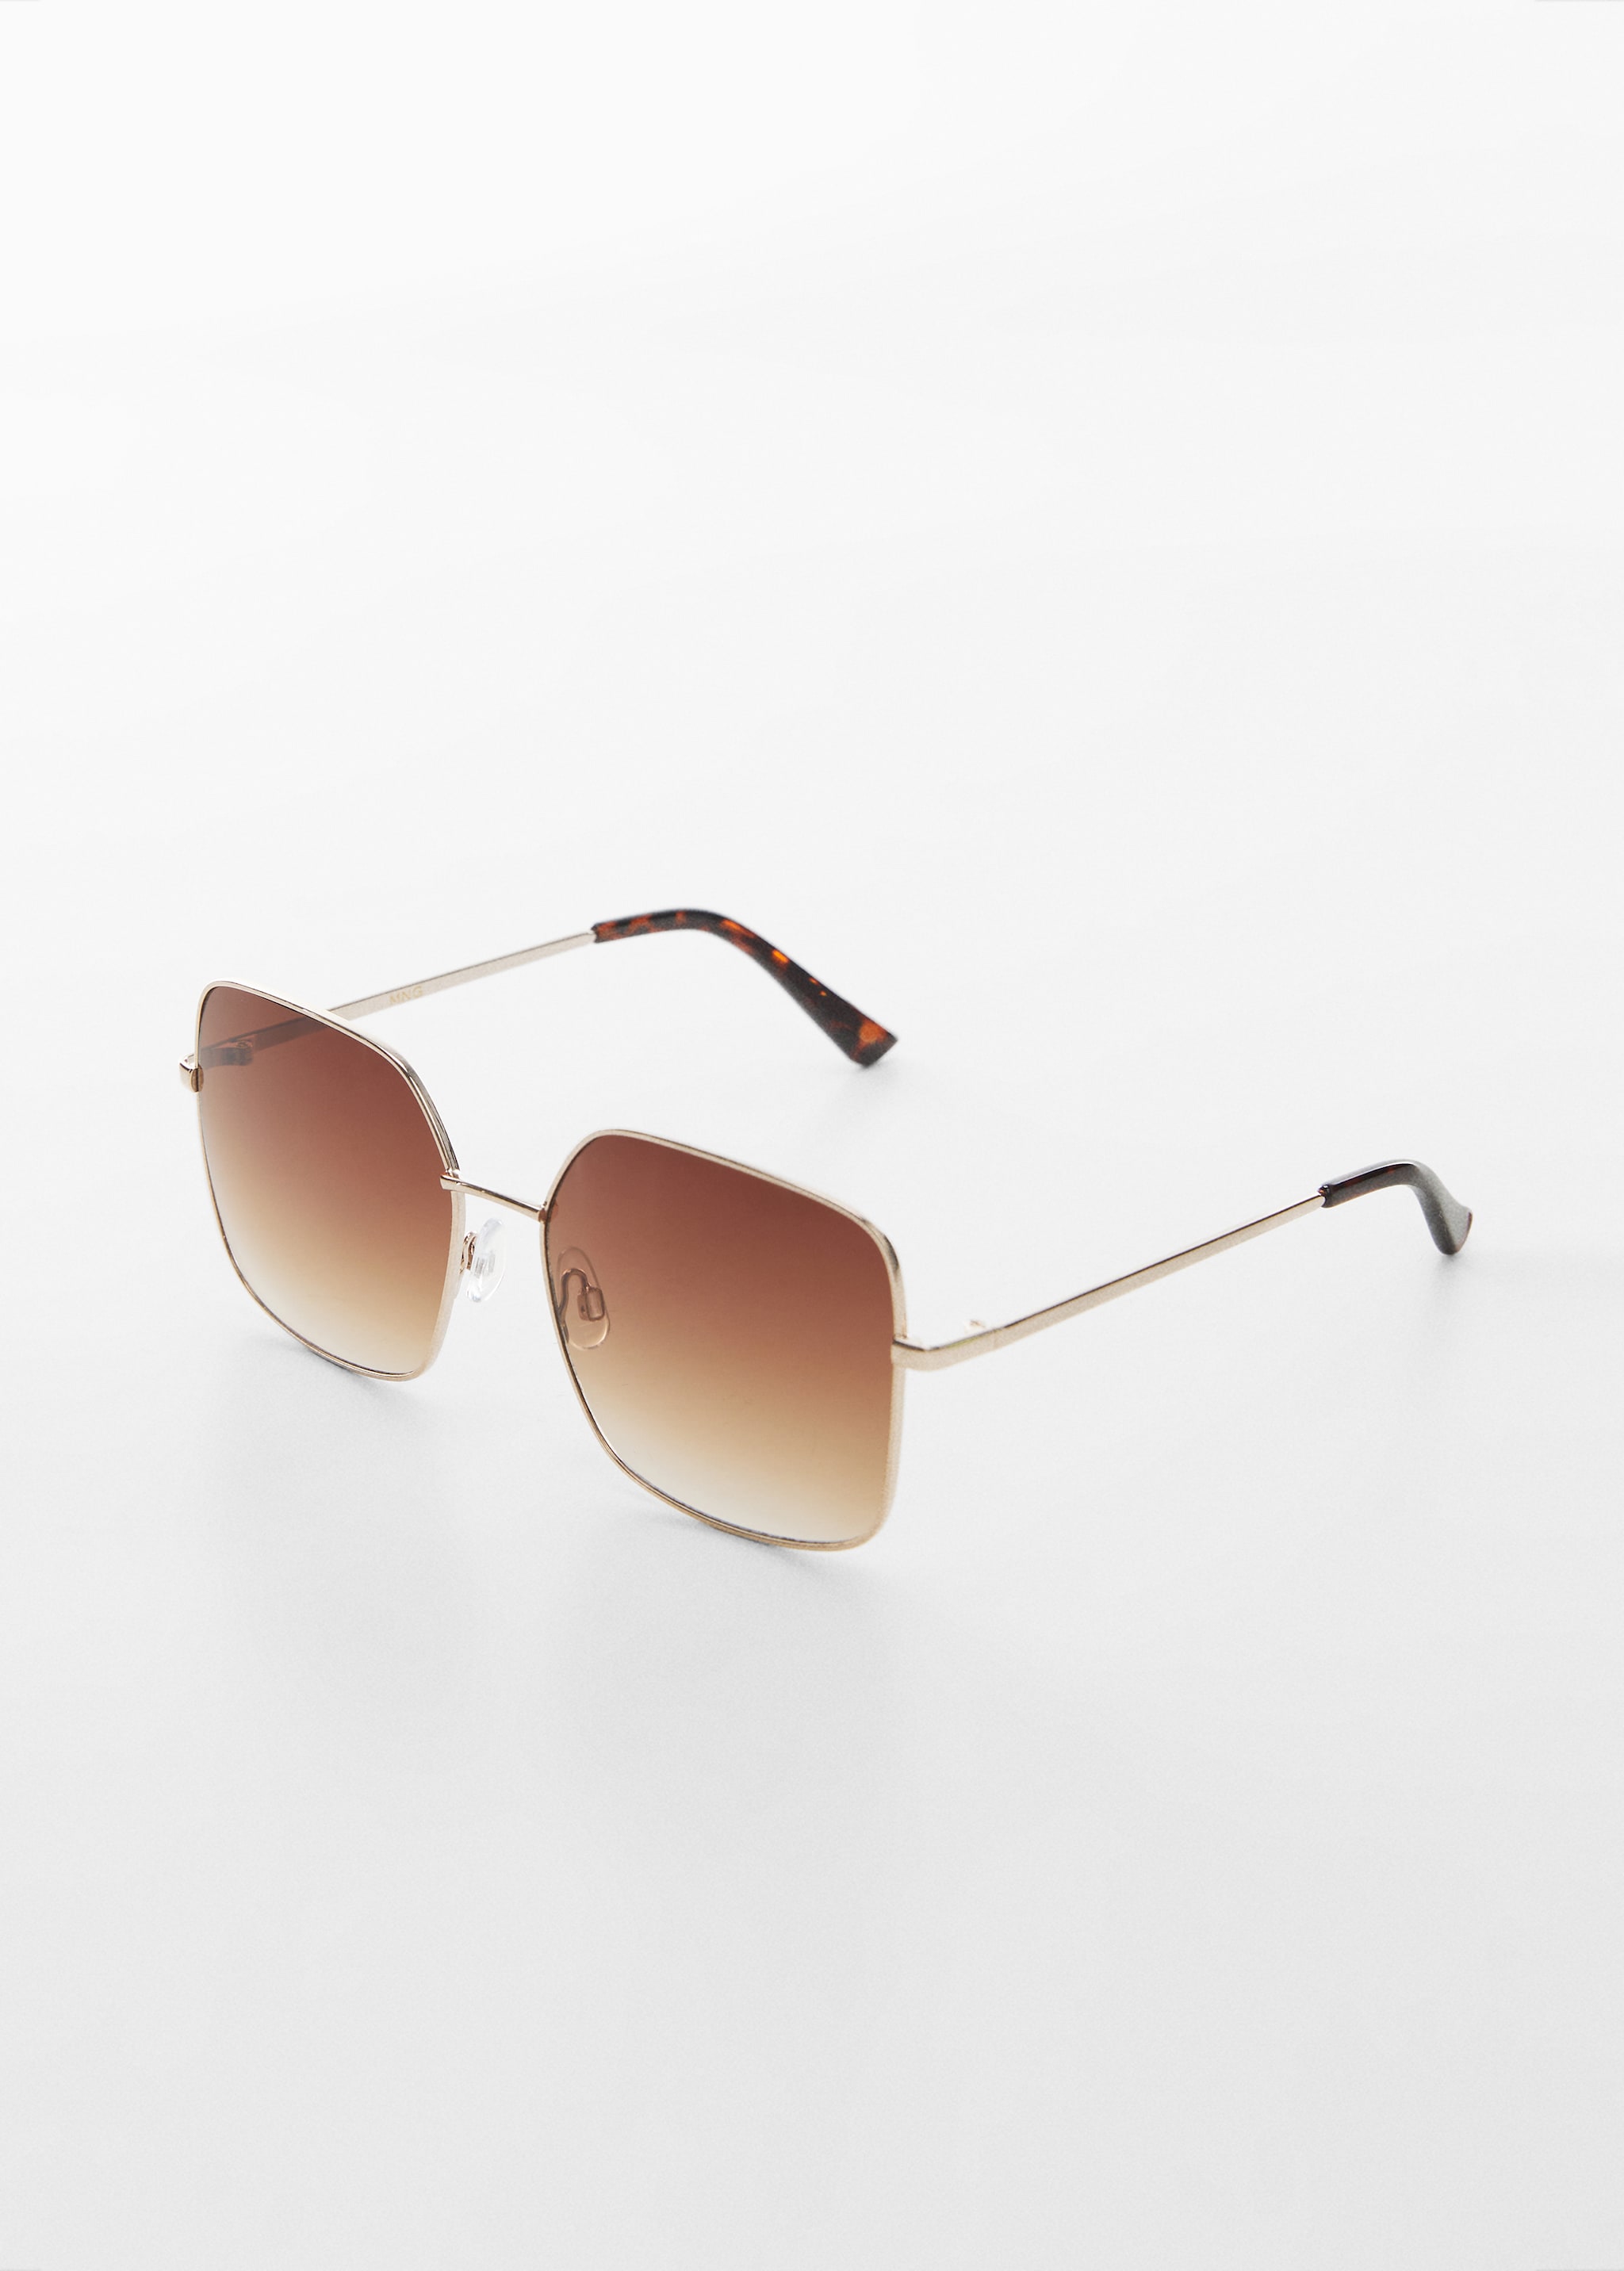 Square metallic frame sunglasses - Medium plane